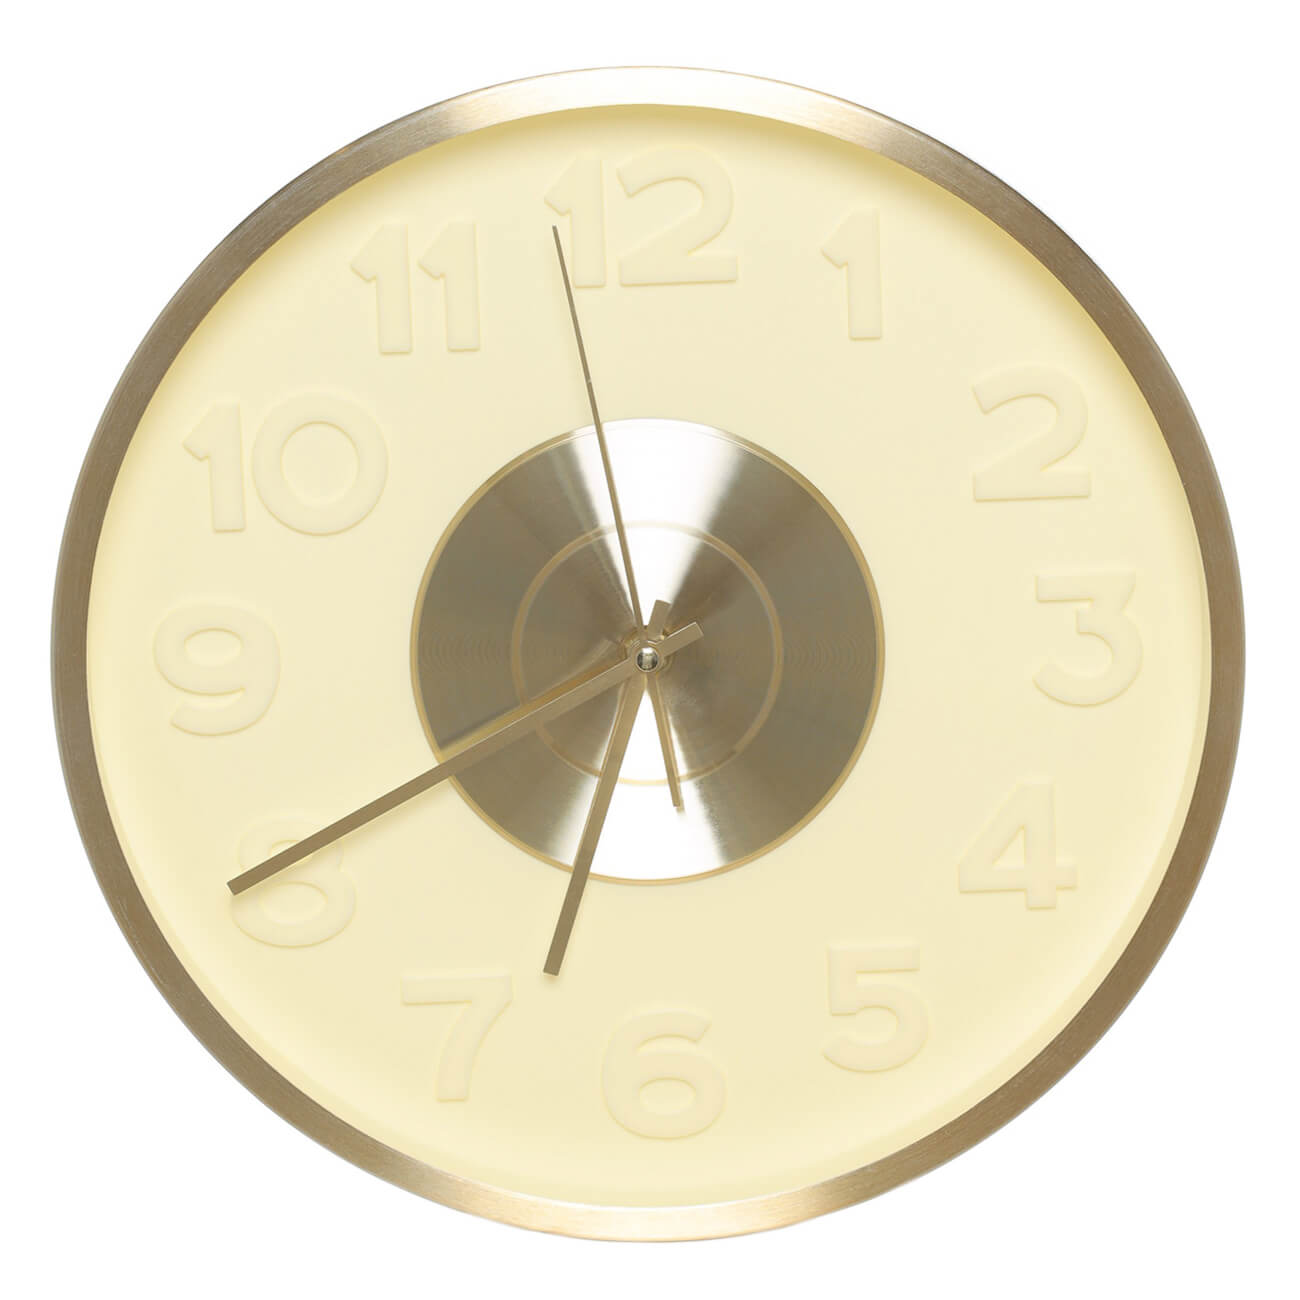 Часы настенные, 30 см, с подсветкой, пластик/стекло, круглые, золотистые, Fantastic gold часы настенные olaff круглые 40х4 5 см арт 152 33037